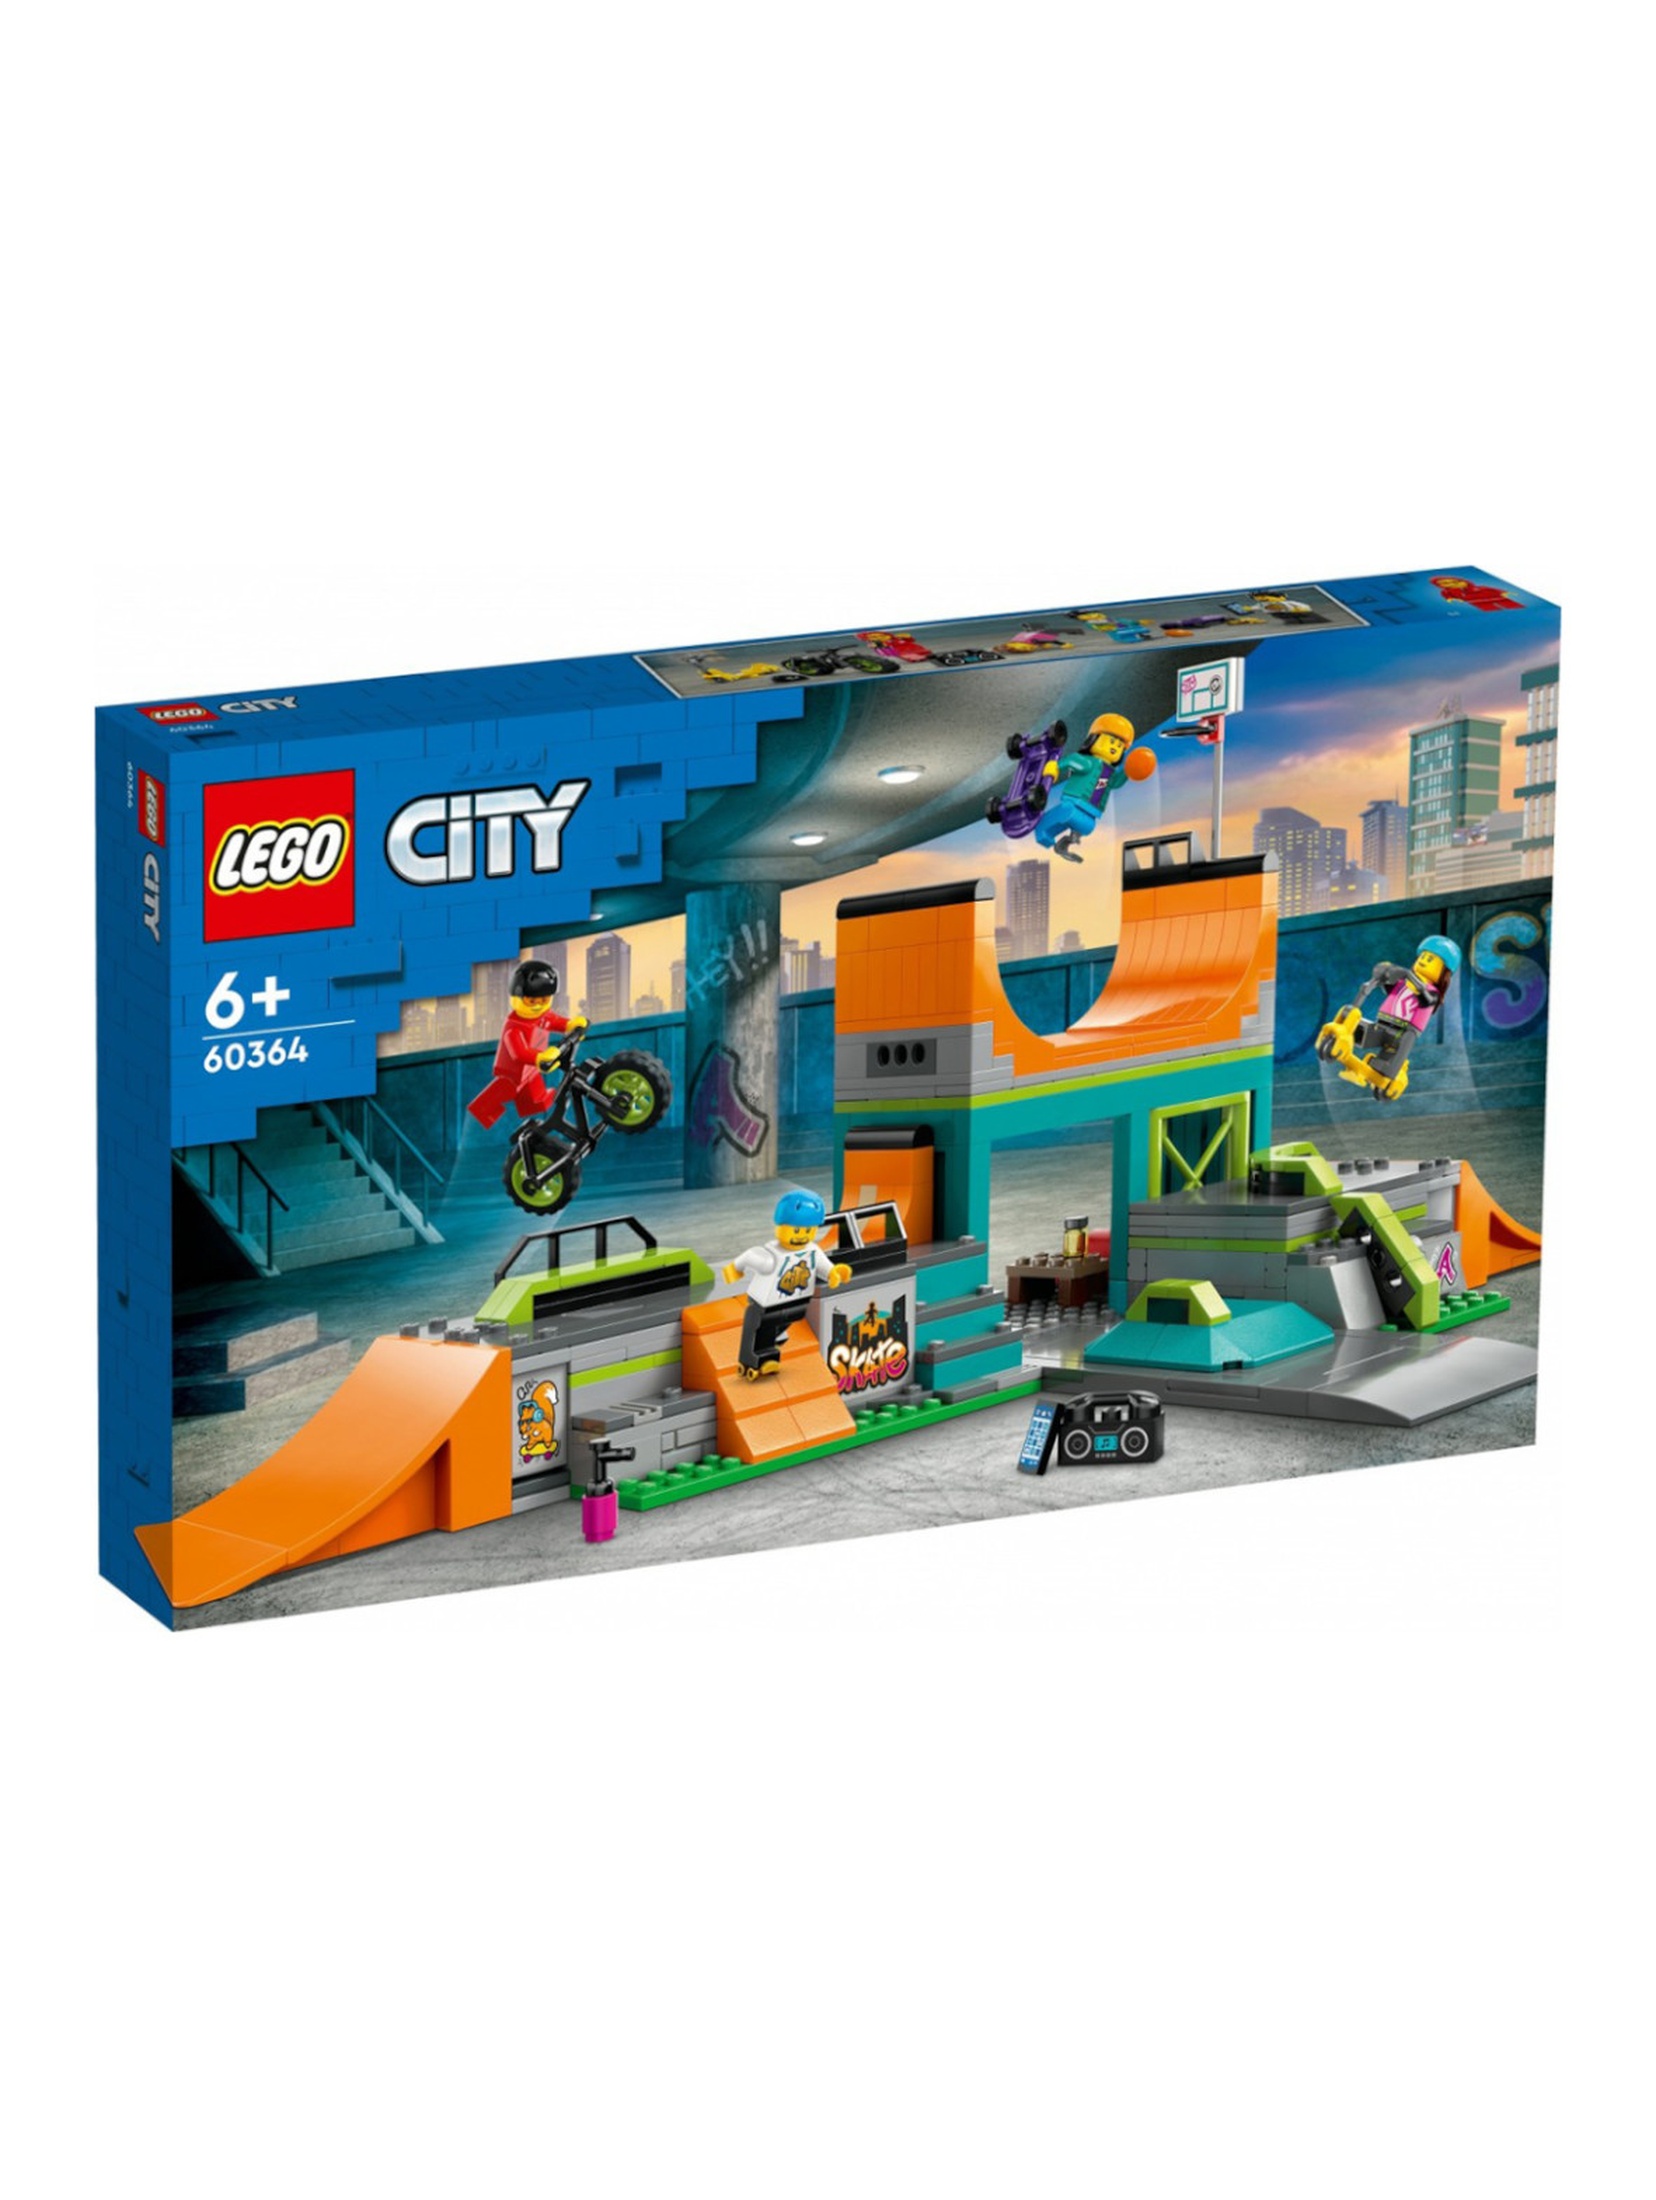 Klocki LEGO City 60364 Uliczny skatepark - 454 elementy, wiek 6 +